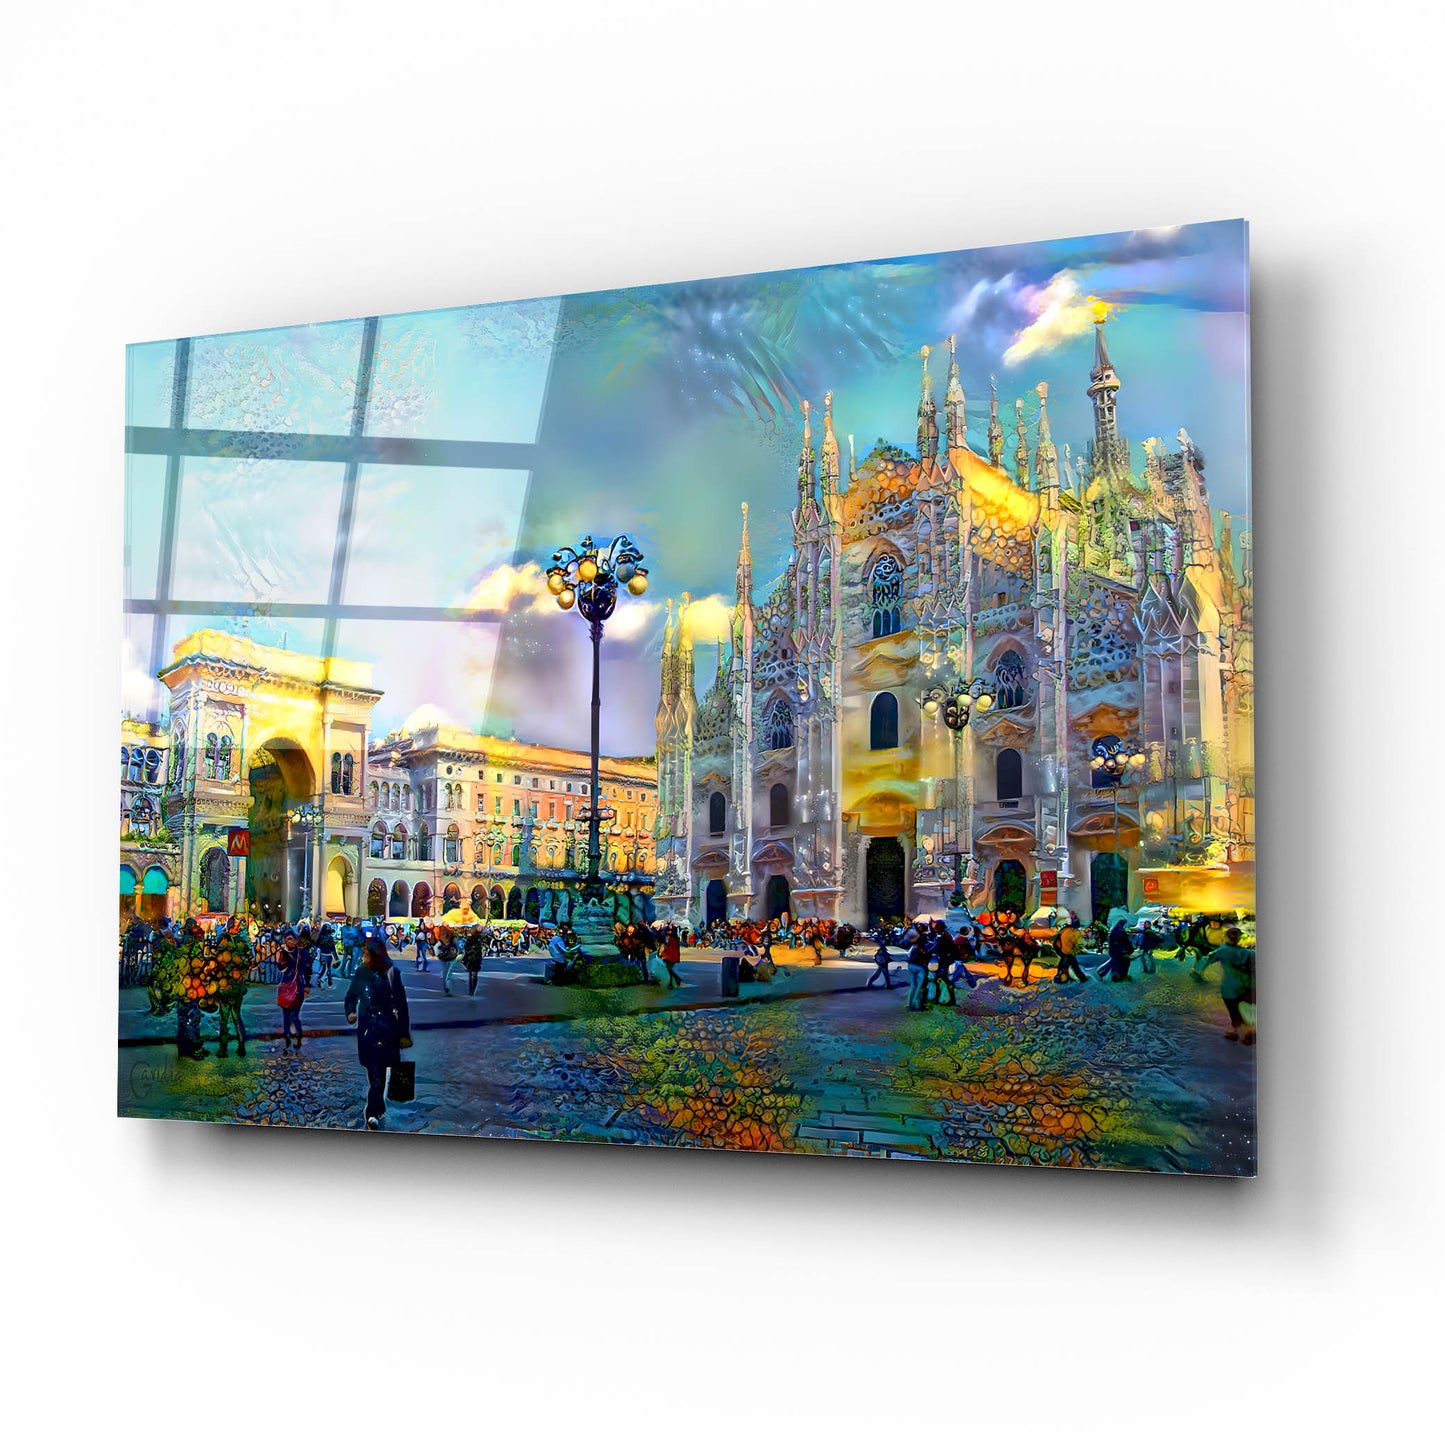 Epic Art 'Milan Italy Piazza del Duomo' by Pedro Gavidia, Acrylic Glass Wall Art,16x12